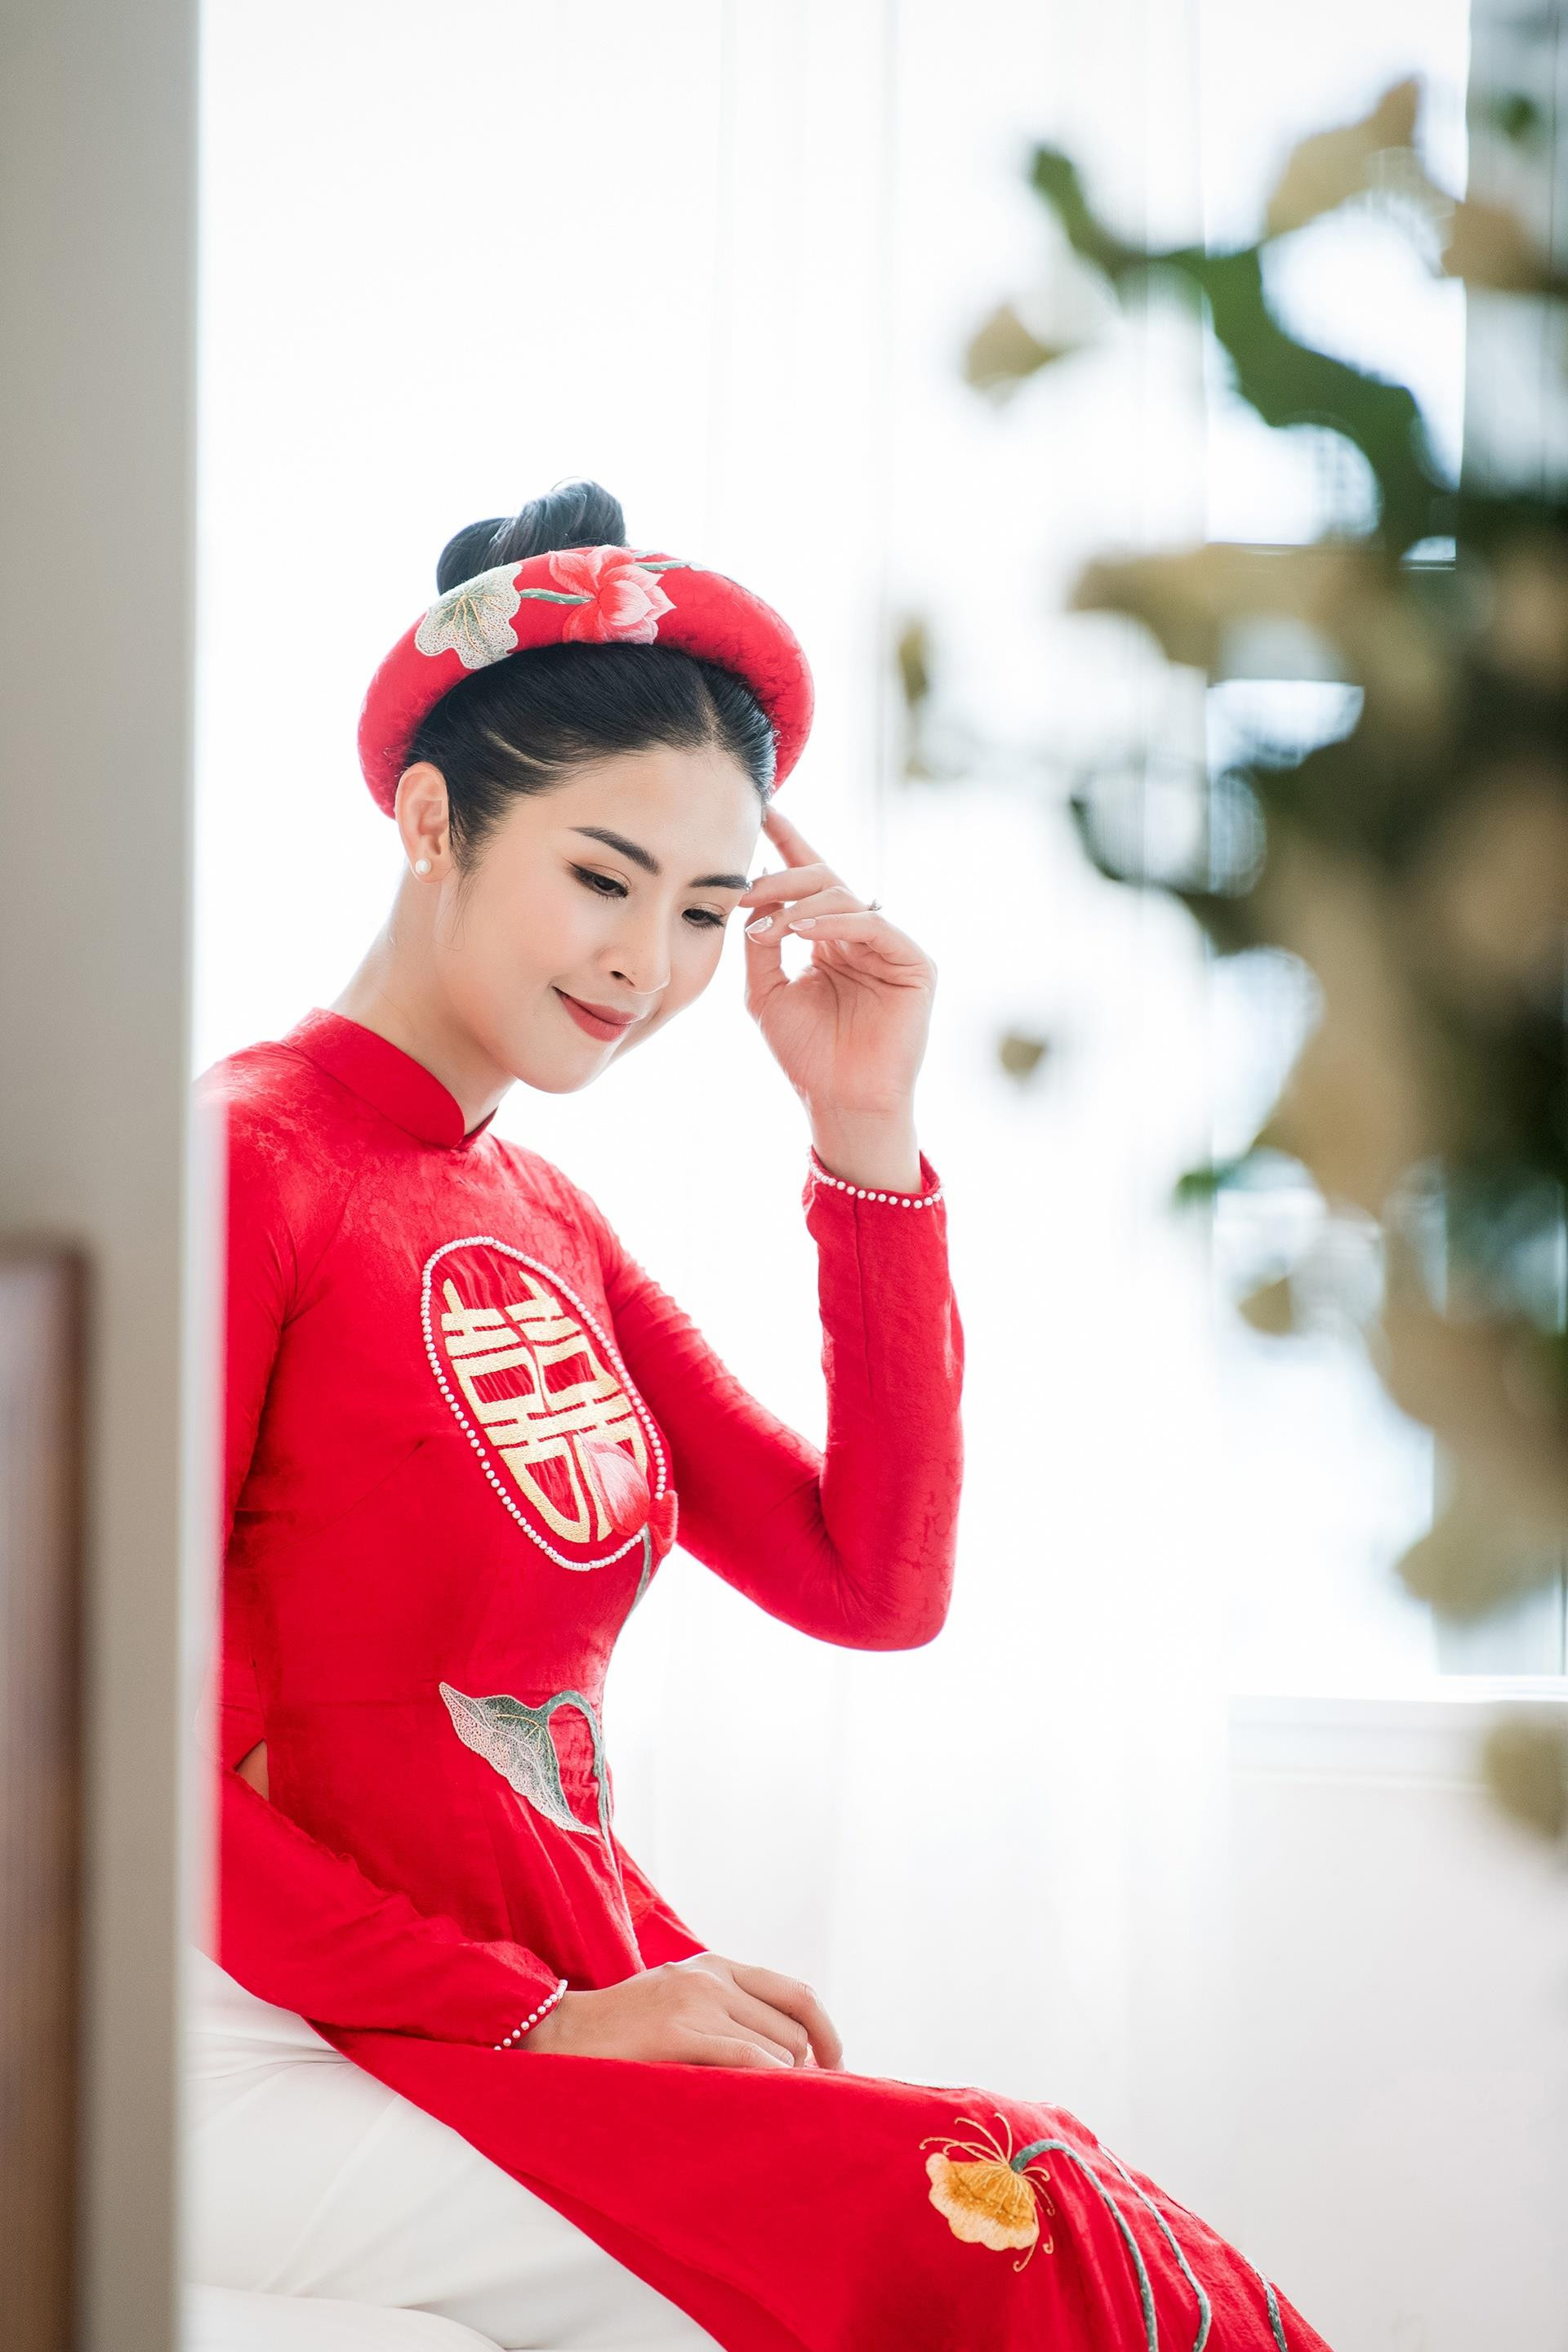 Hoa hậu Ngọc Hân được chú rể rước bằng xe mui trần cổ điển  - 2